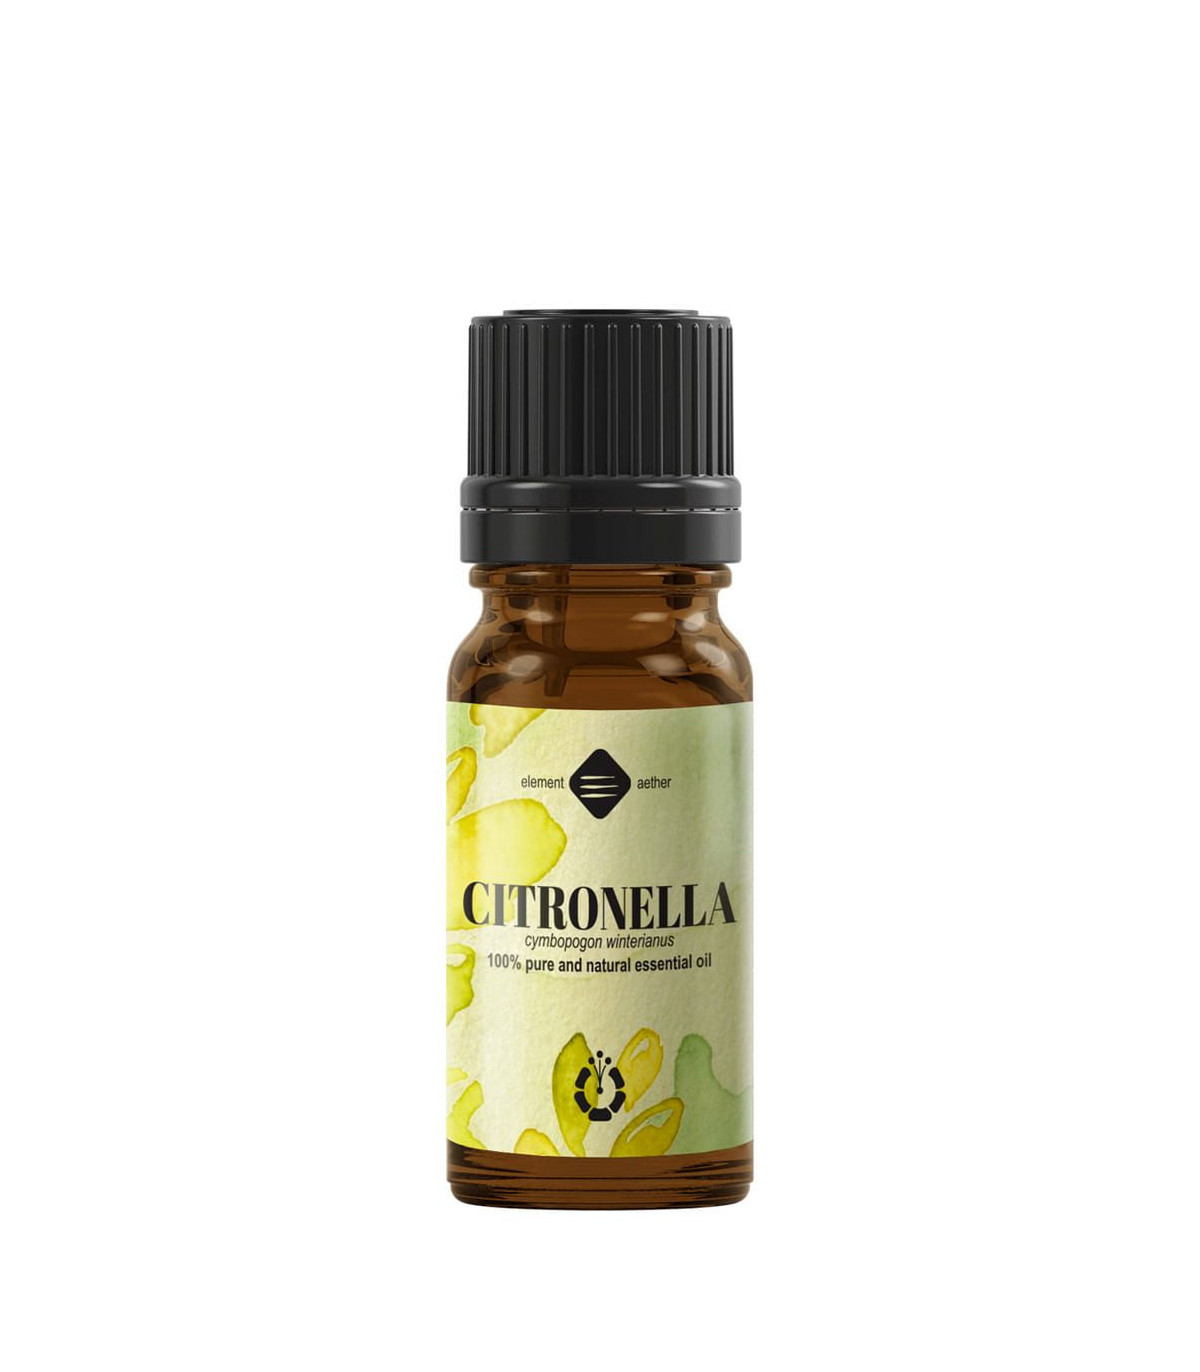 Citronella pure essential oil